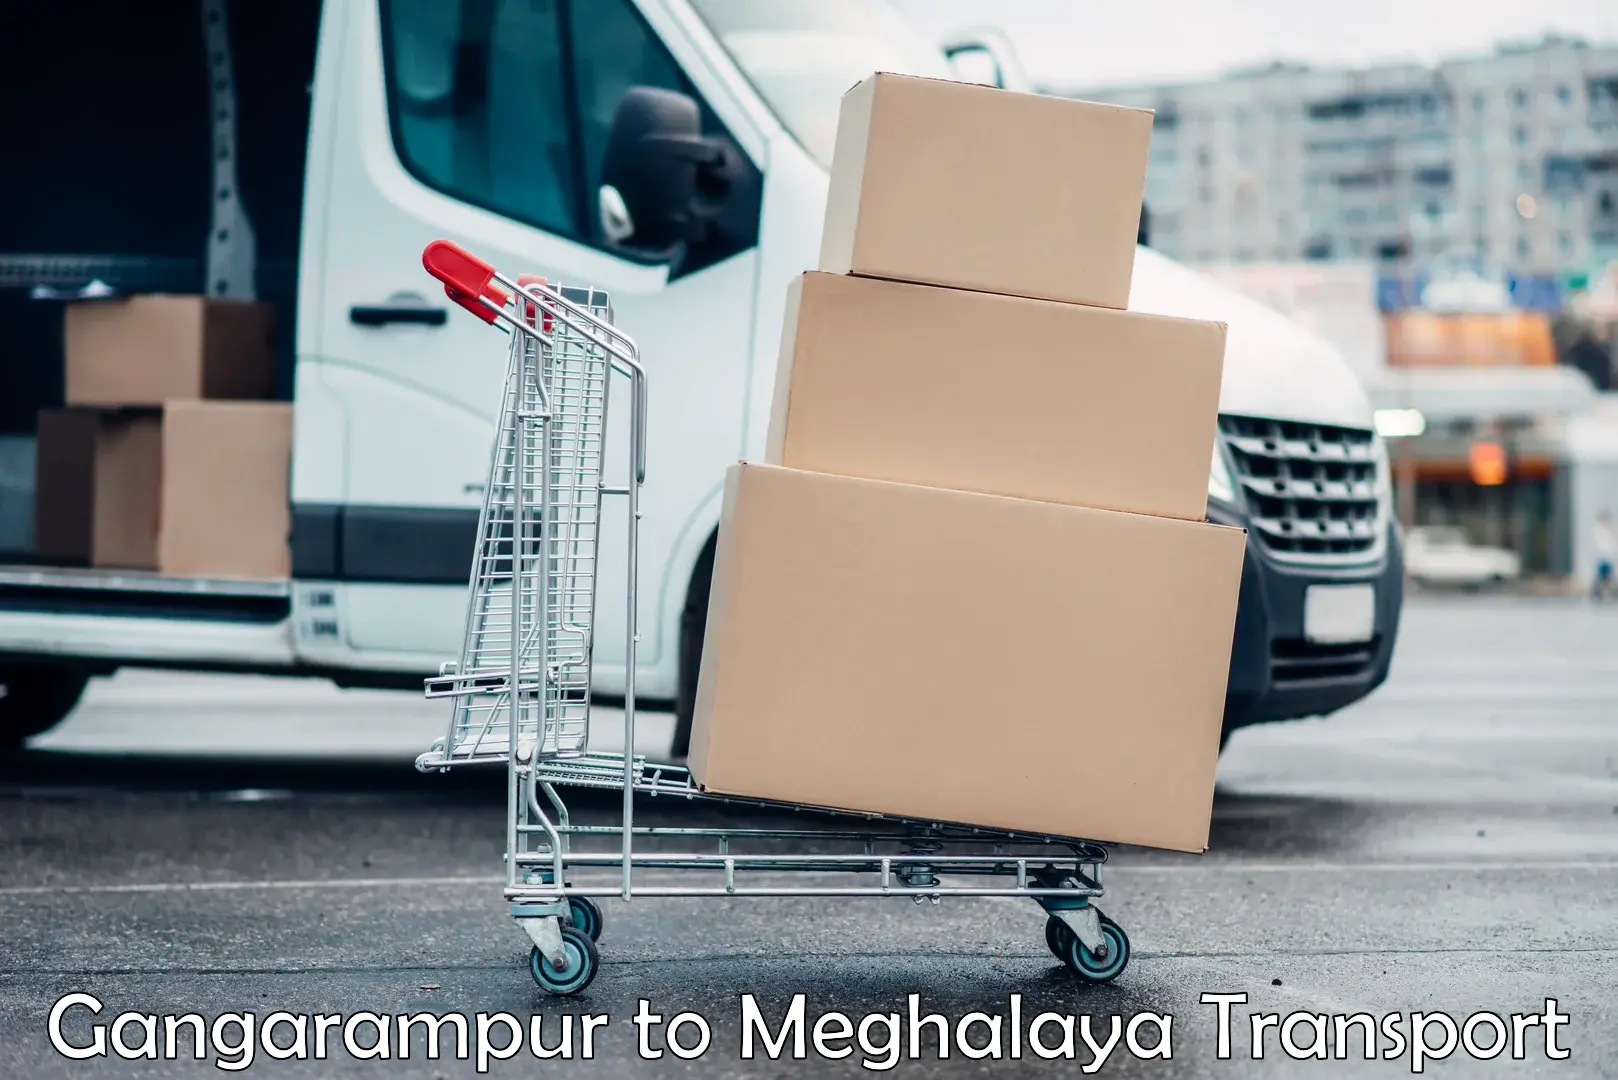 Shipping partner Gangarampur to Meghalaya